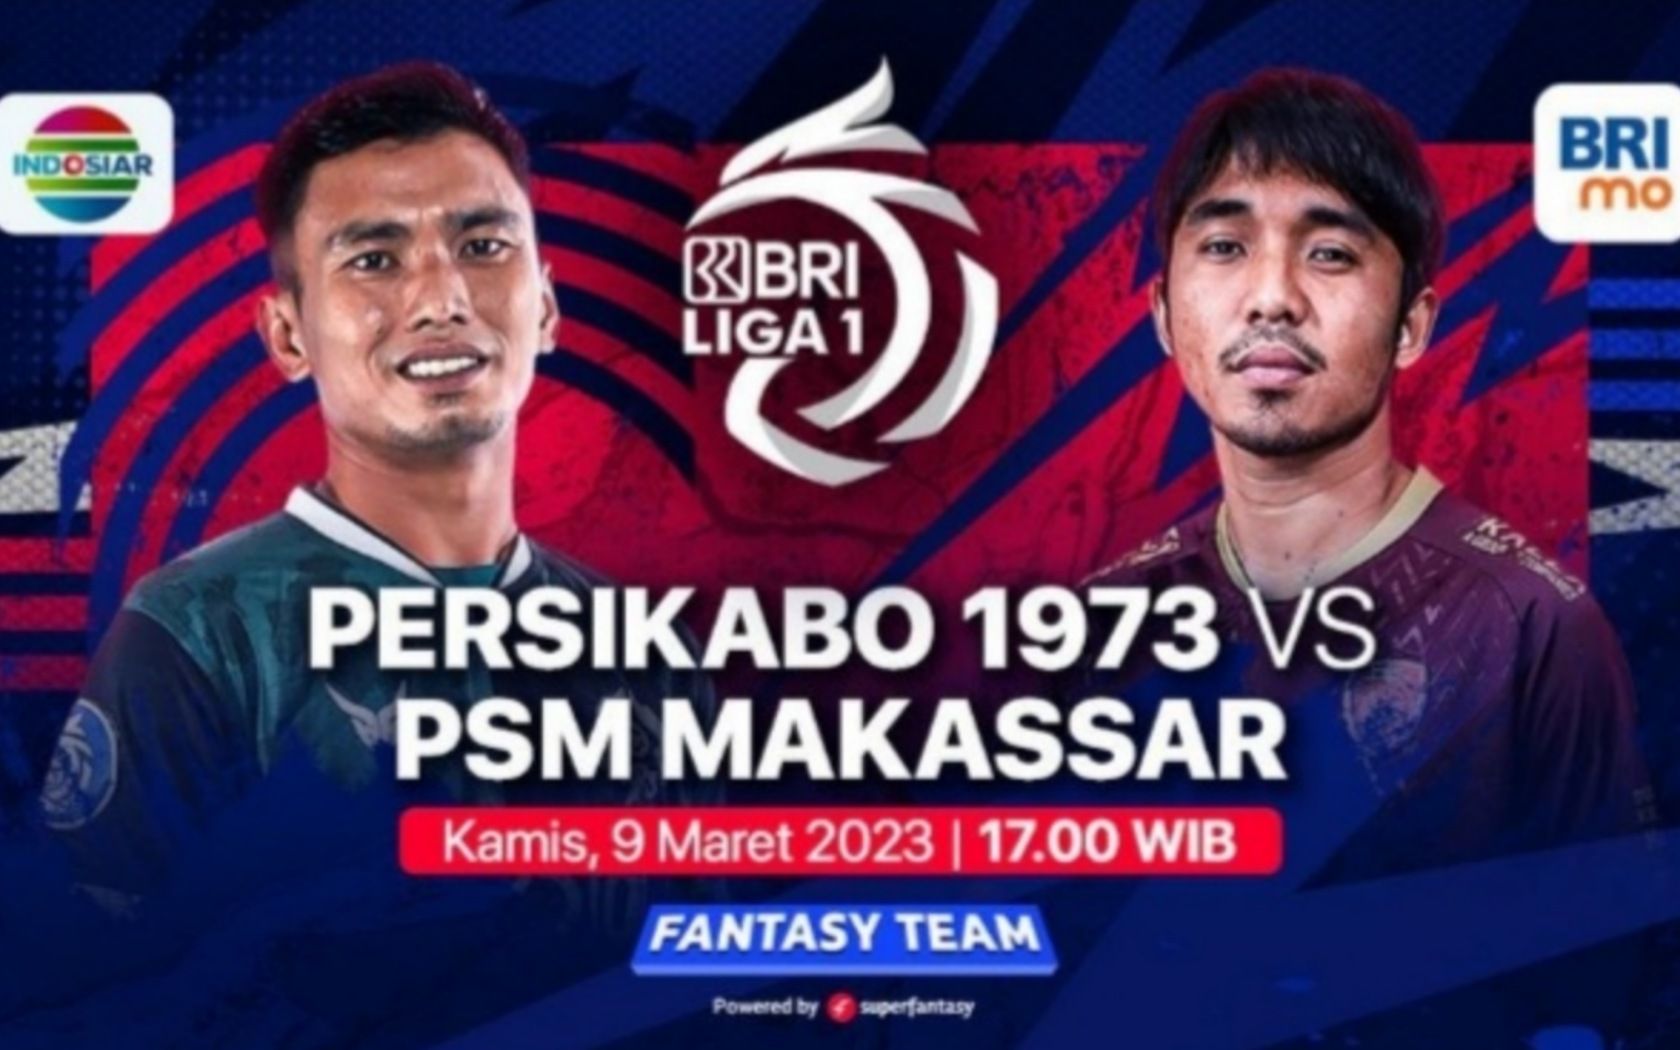 Prediksi formasi susunan pemain Persikabo 1973 vs PSM Makassar pertandingan BRI Liga 1 hari ini